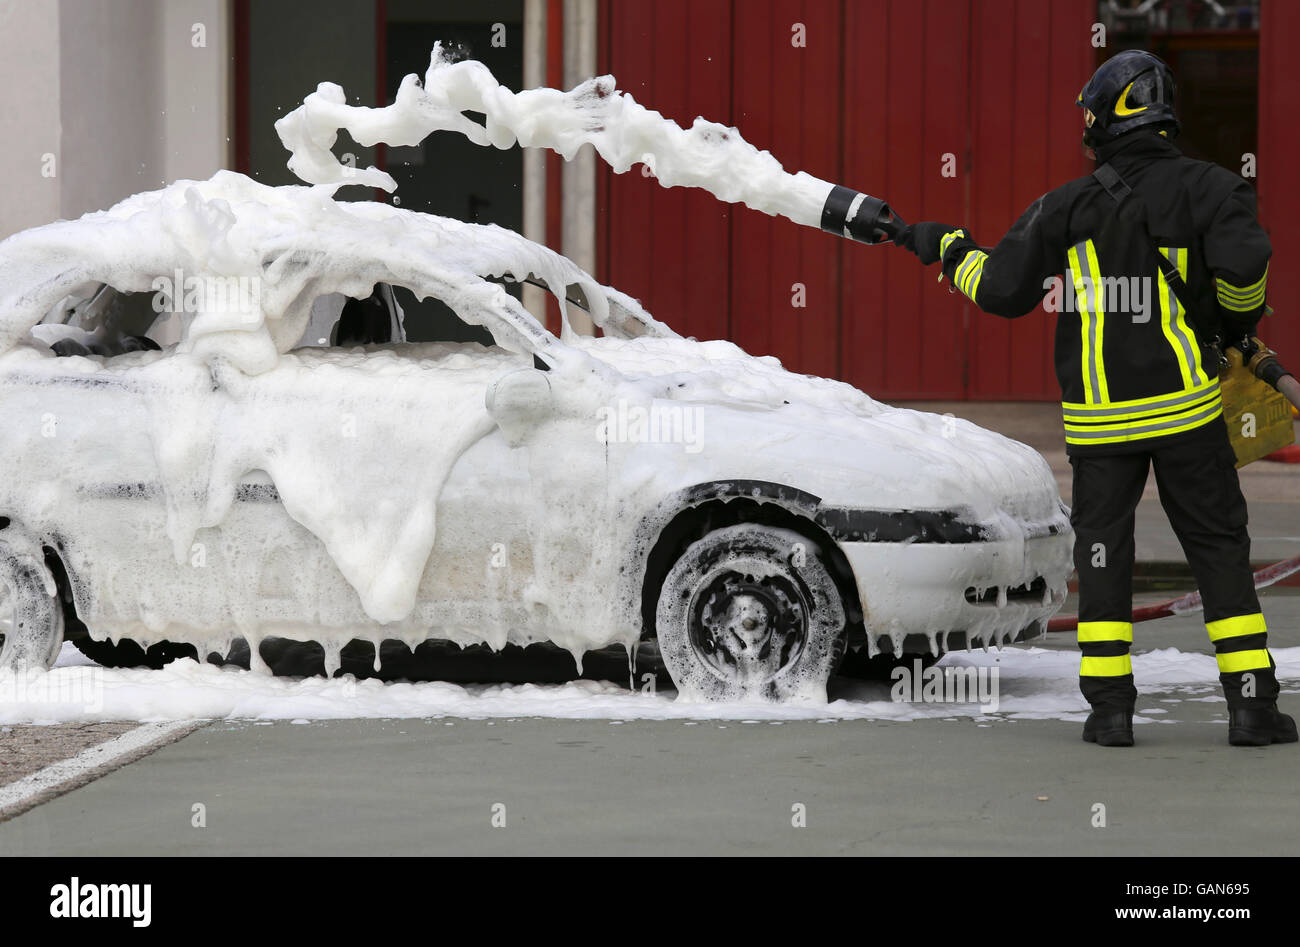 Feuerwehrleute während des Trainings, ein Feuer in einem Auto mit Schaum zu  löschen Stockfotografie - Alamy